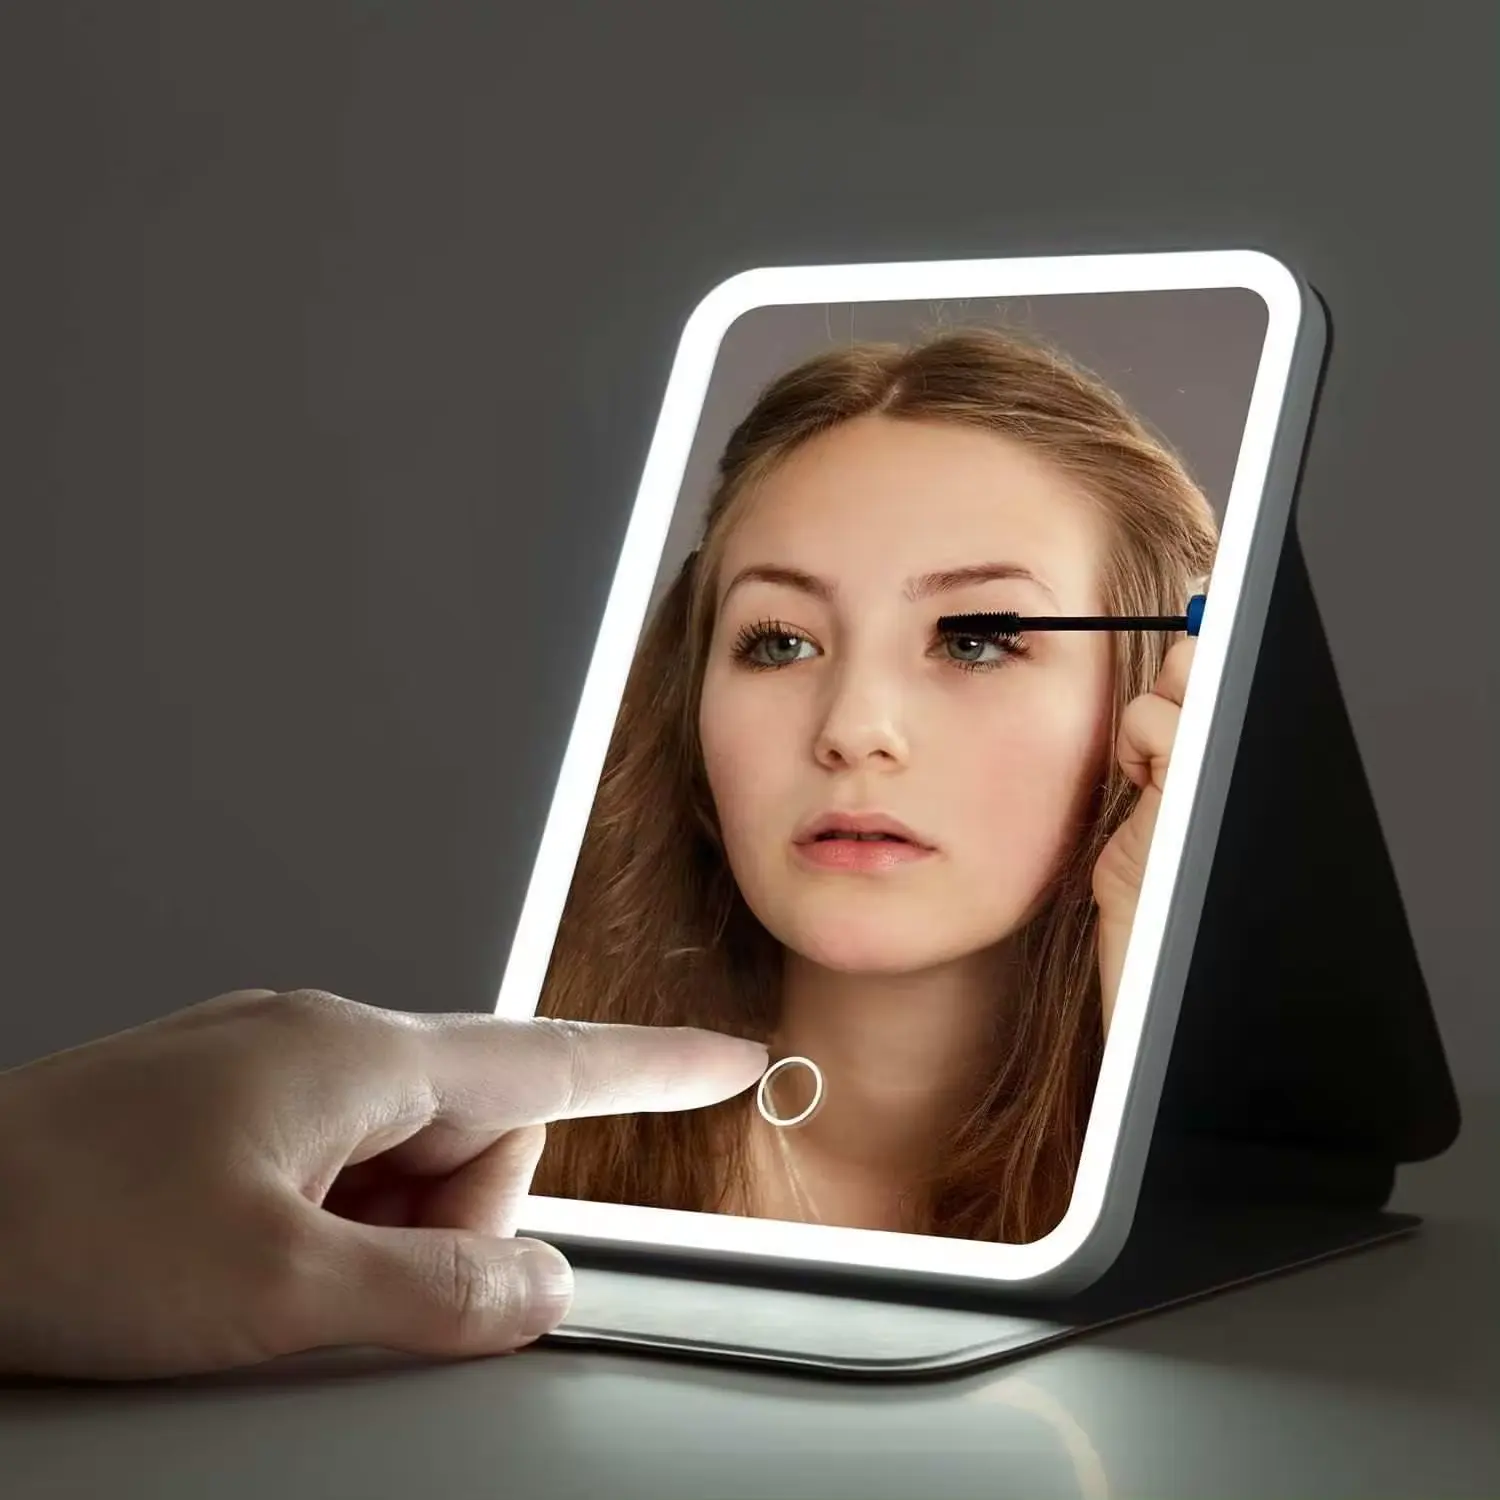 مرآة لوجو مخصصة من الشركة المصنعة قابلة لإعادة الشحن على طراز iPad للسطح المكتبي أو على سطح المكتب أو أثناء السفر أو عند الاستخدام كنوع من مستحضرات التجميل مع إضاءة ليد